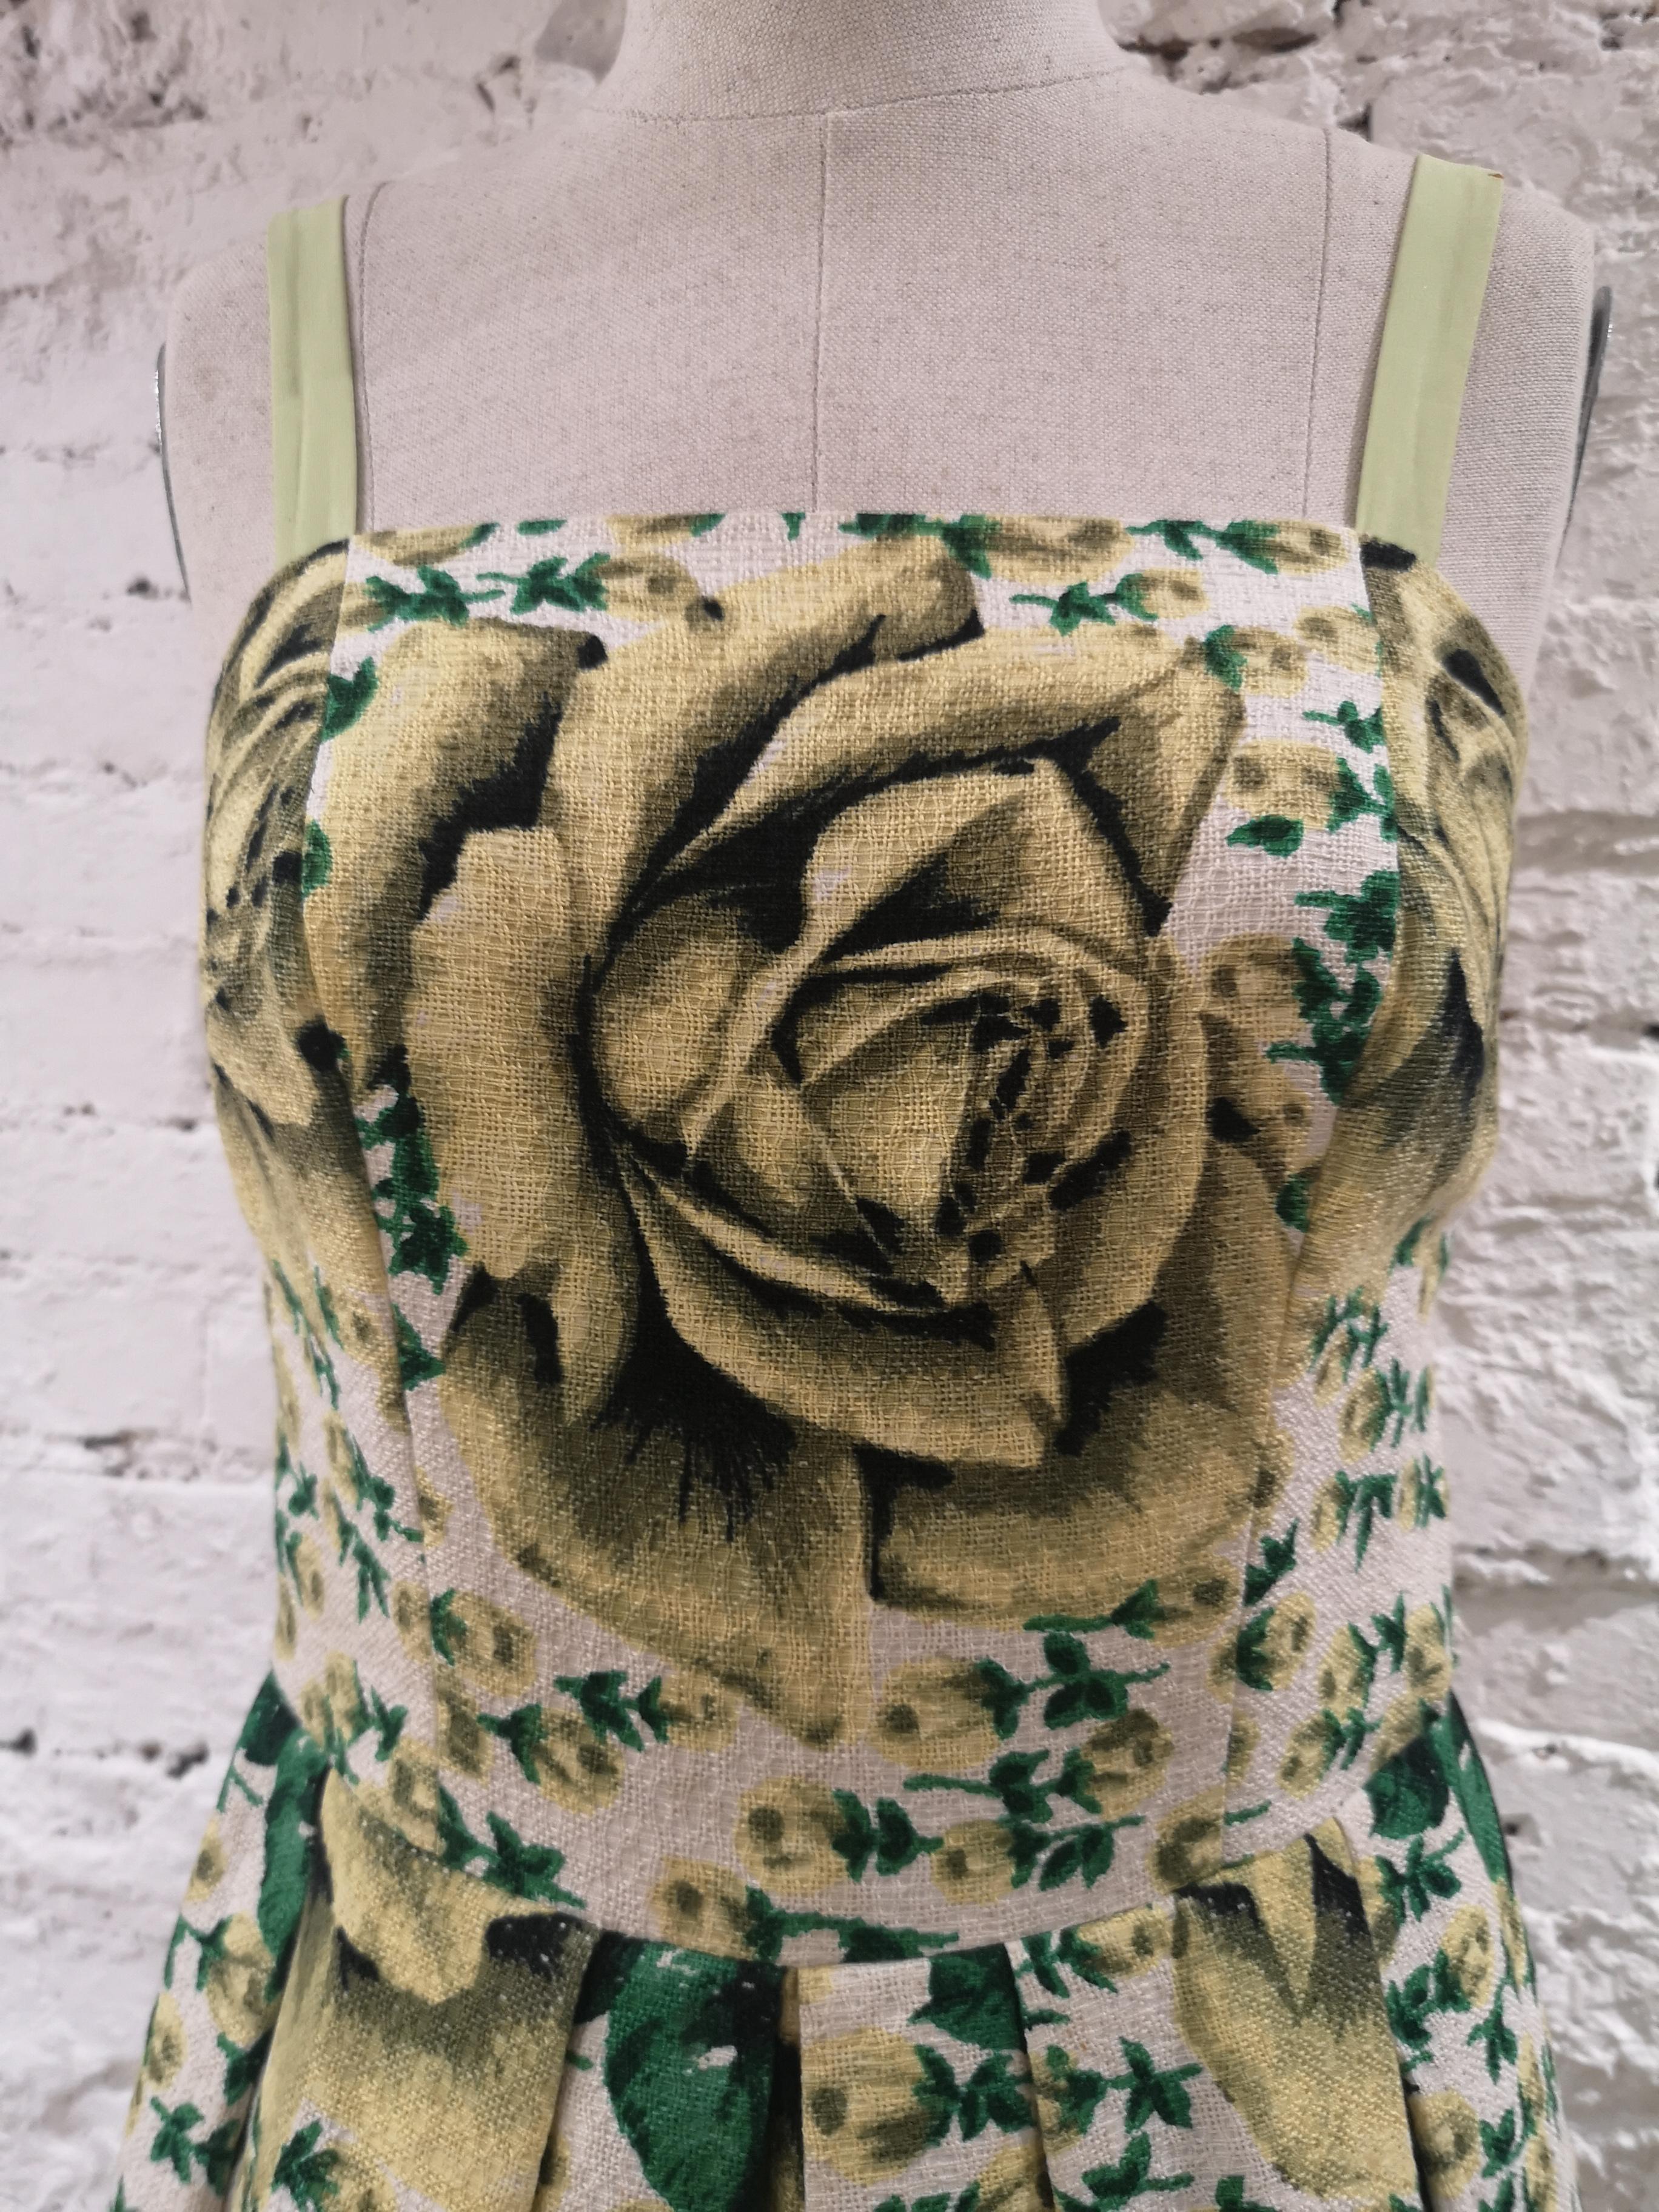 Gelbgrünes Baumwollkleid im Vintage-Look
größe 40
gesamtlänge 98 cm